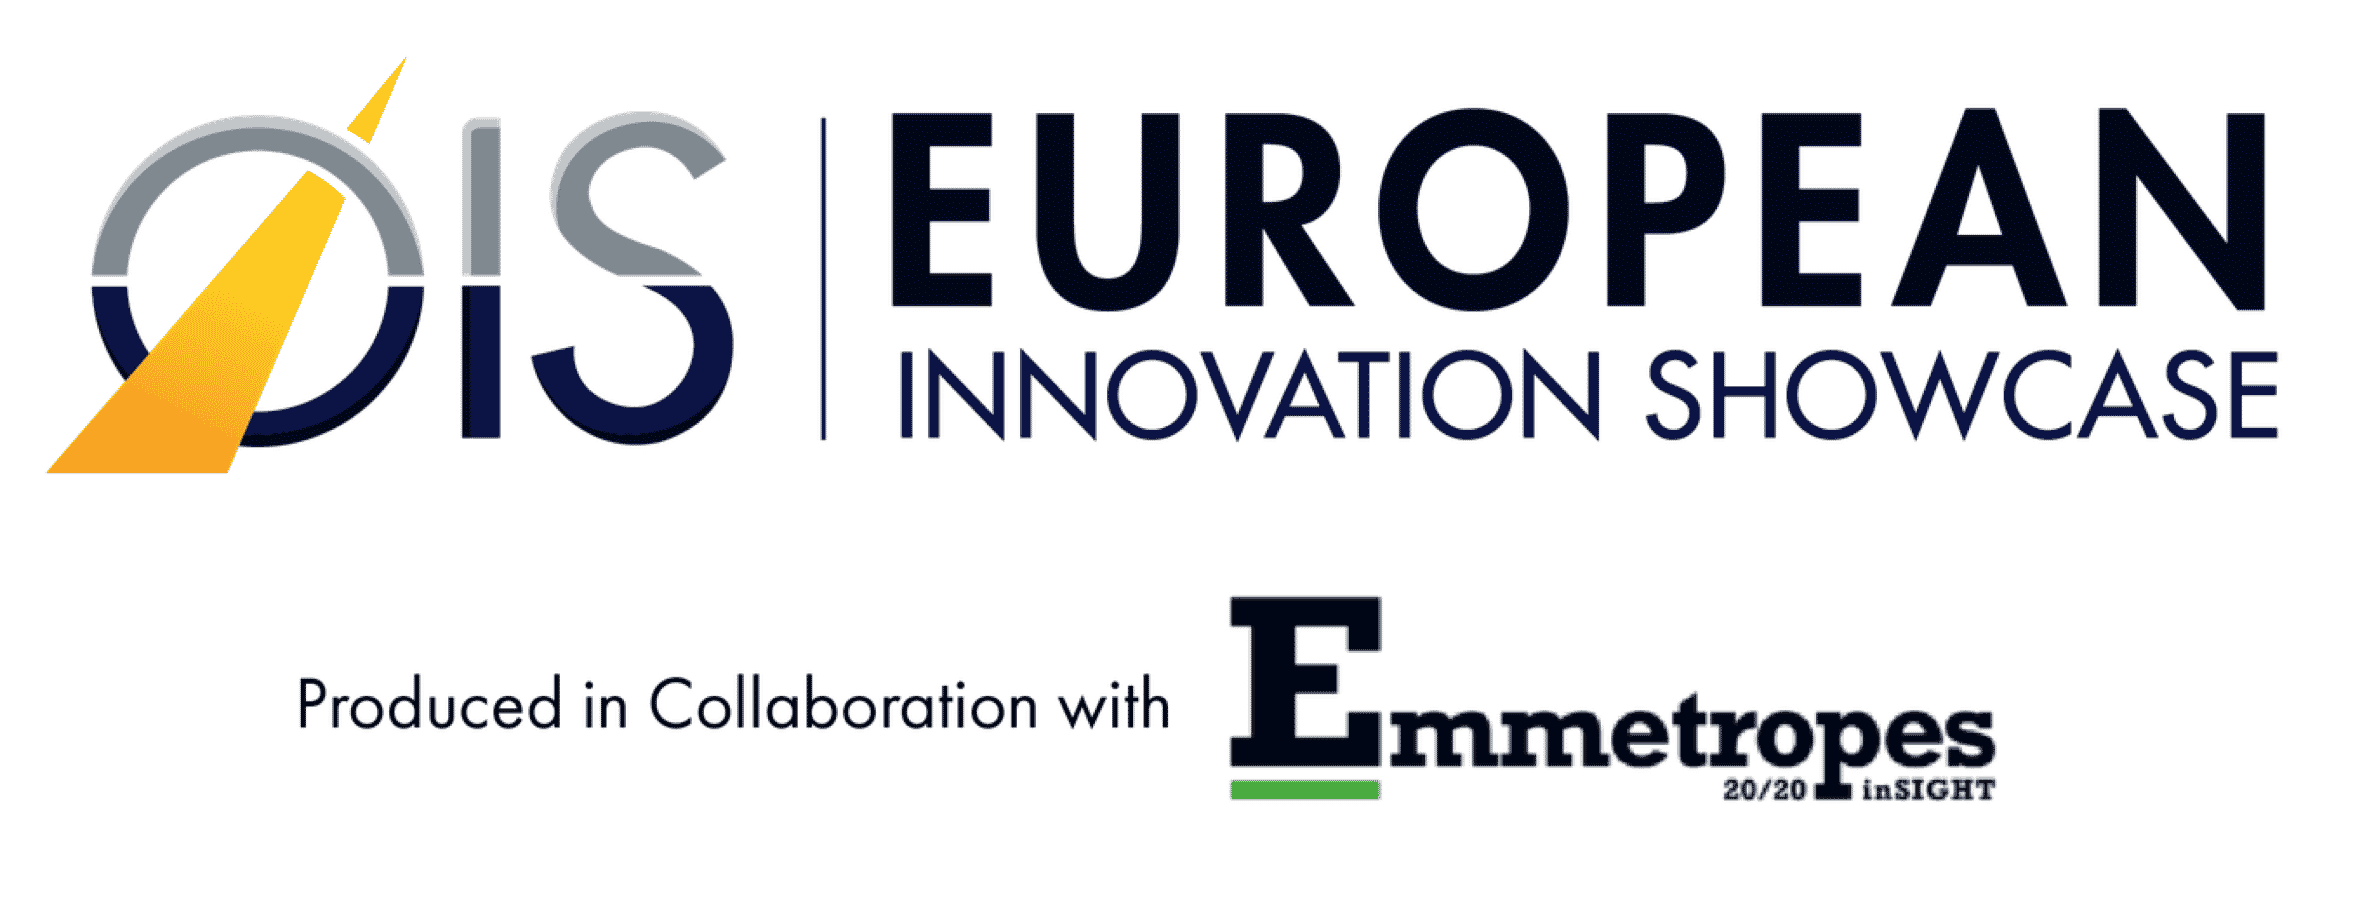 OIS European Innovation Showcase